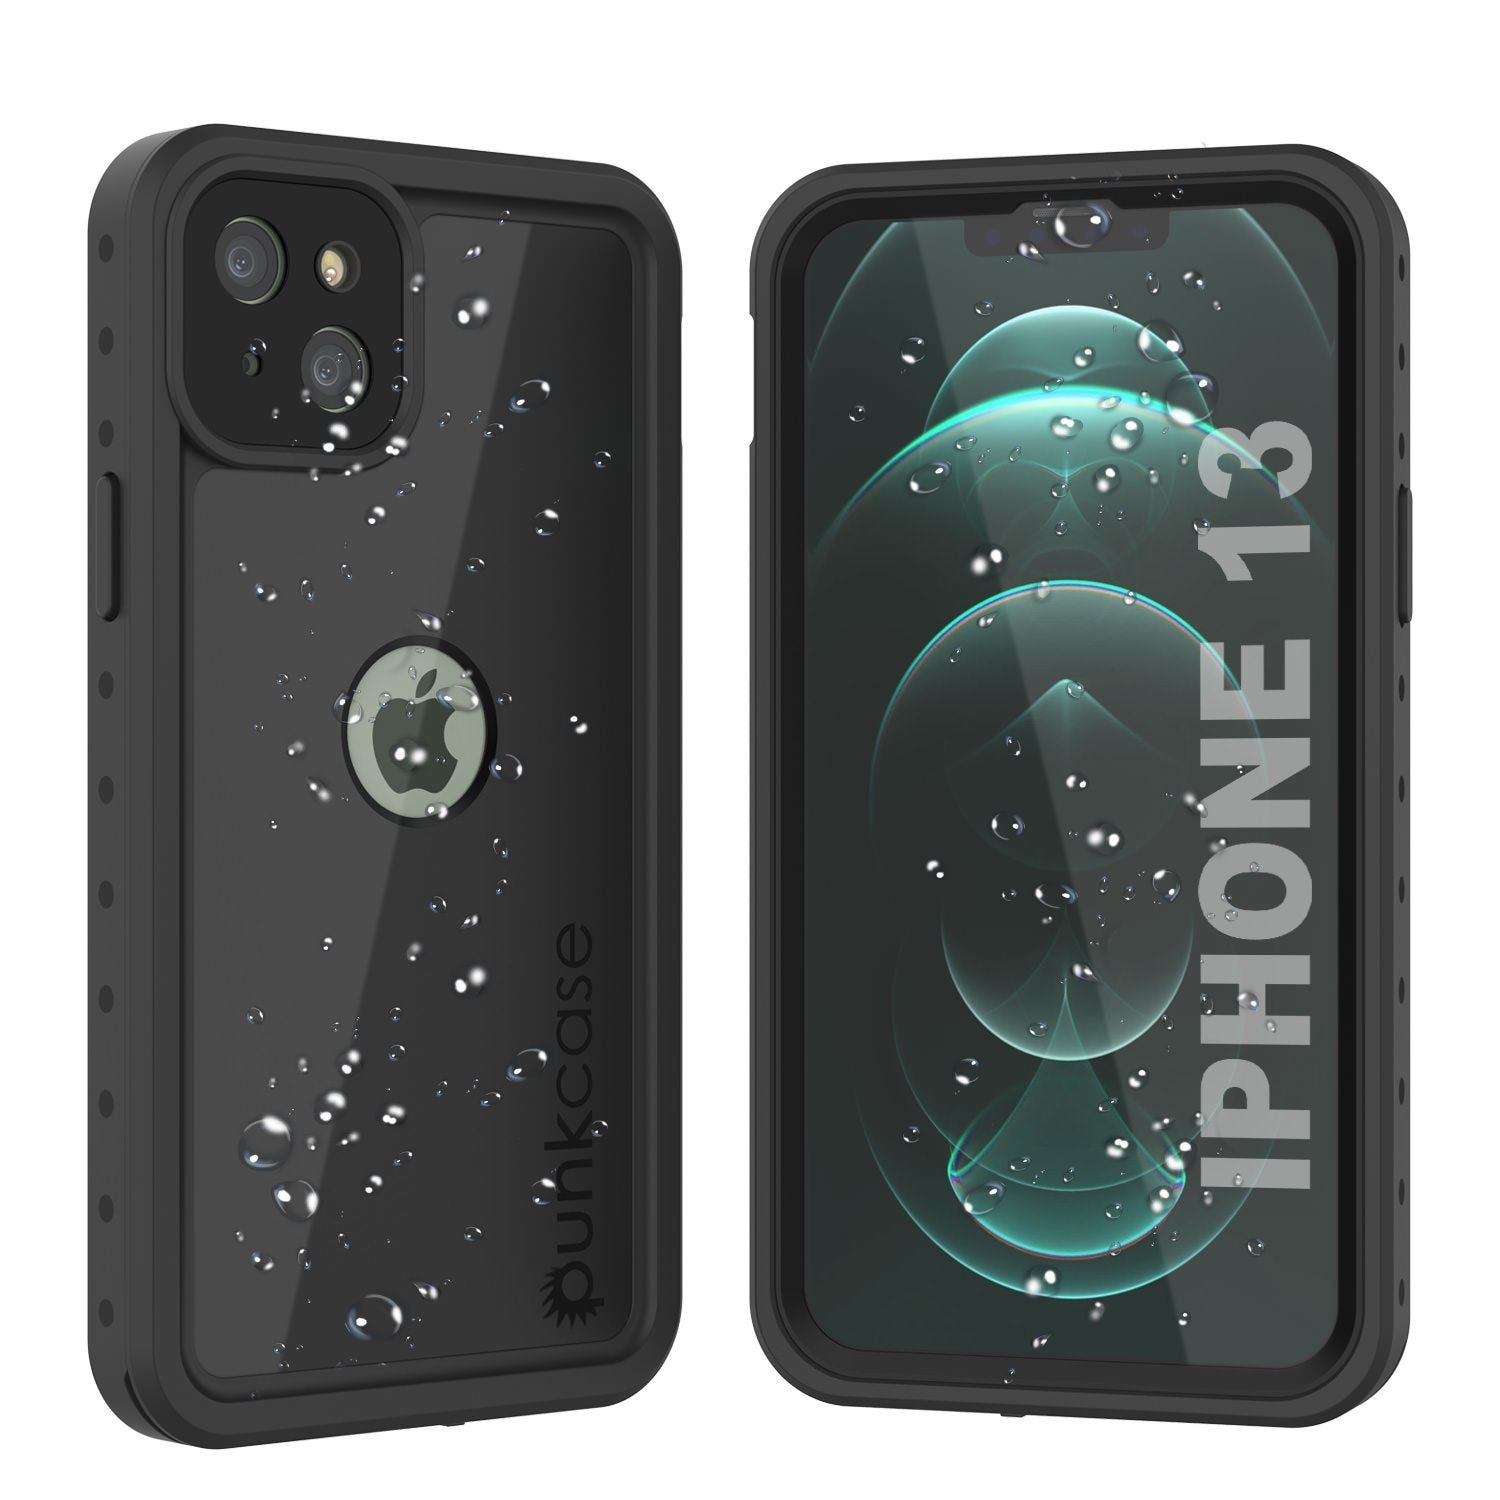 iPhone 13 Waterproof IP68 Case, Punkcase [Black] [StudStar Series] [Slim Fit]